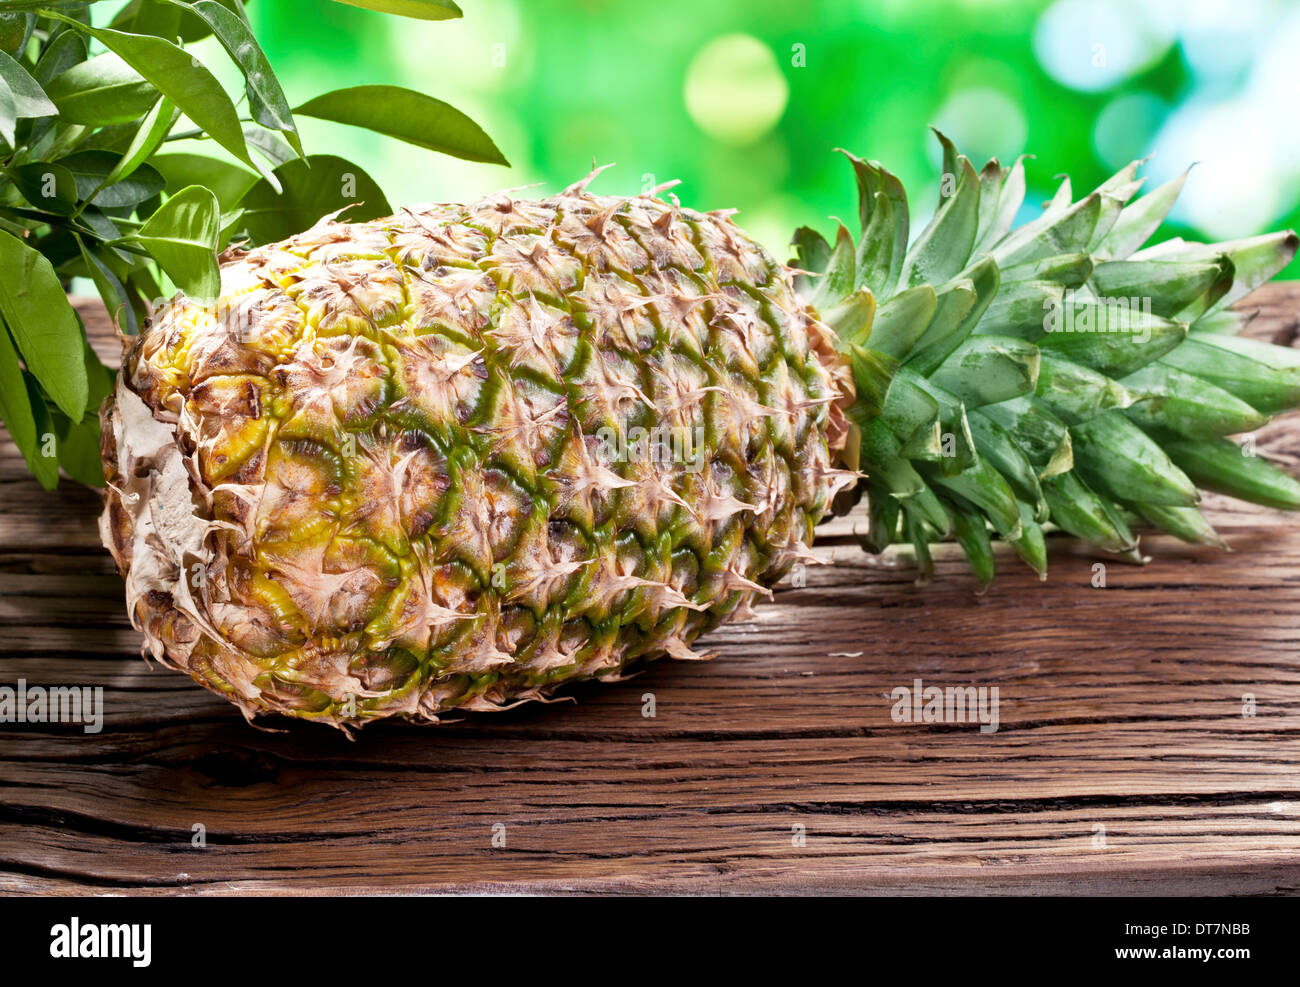 Frucht einer Ananas auf einem Holztisch mit dunkelgrünem Laub auf dem Hintergrund. Stockfoto